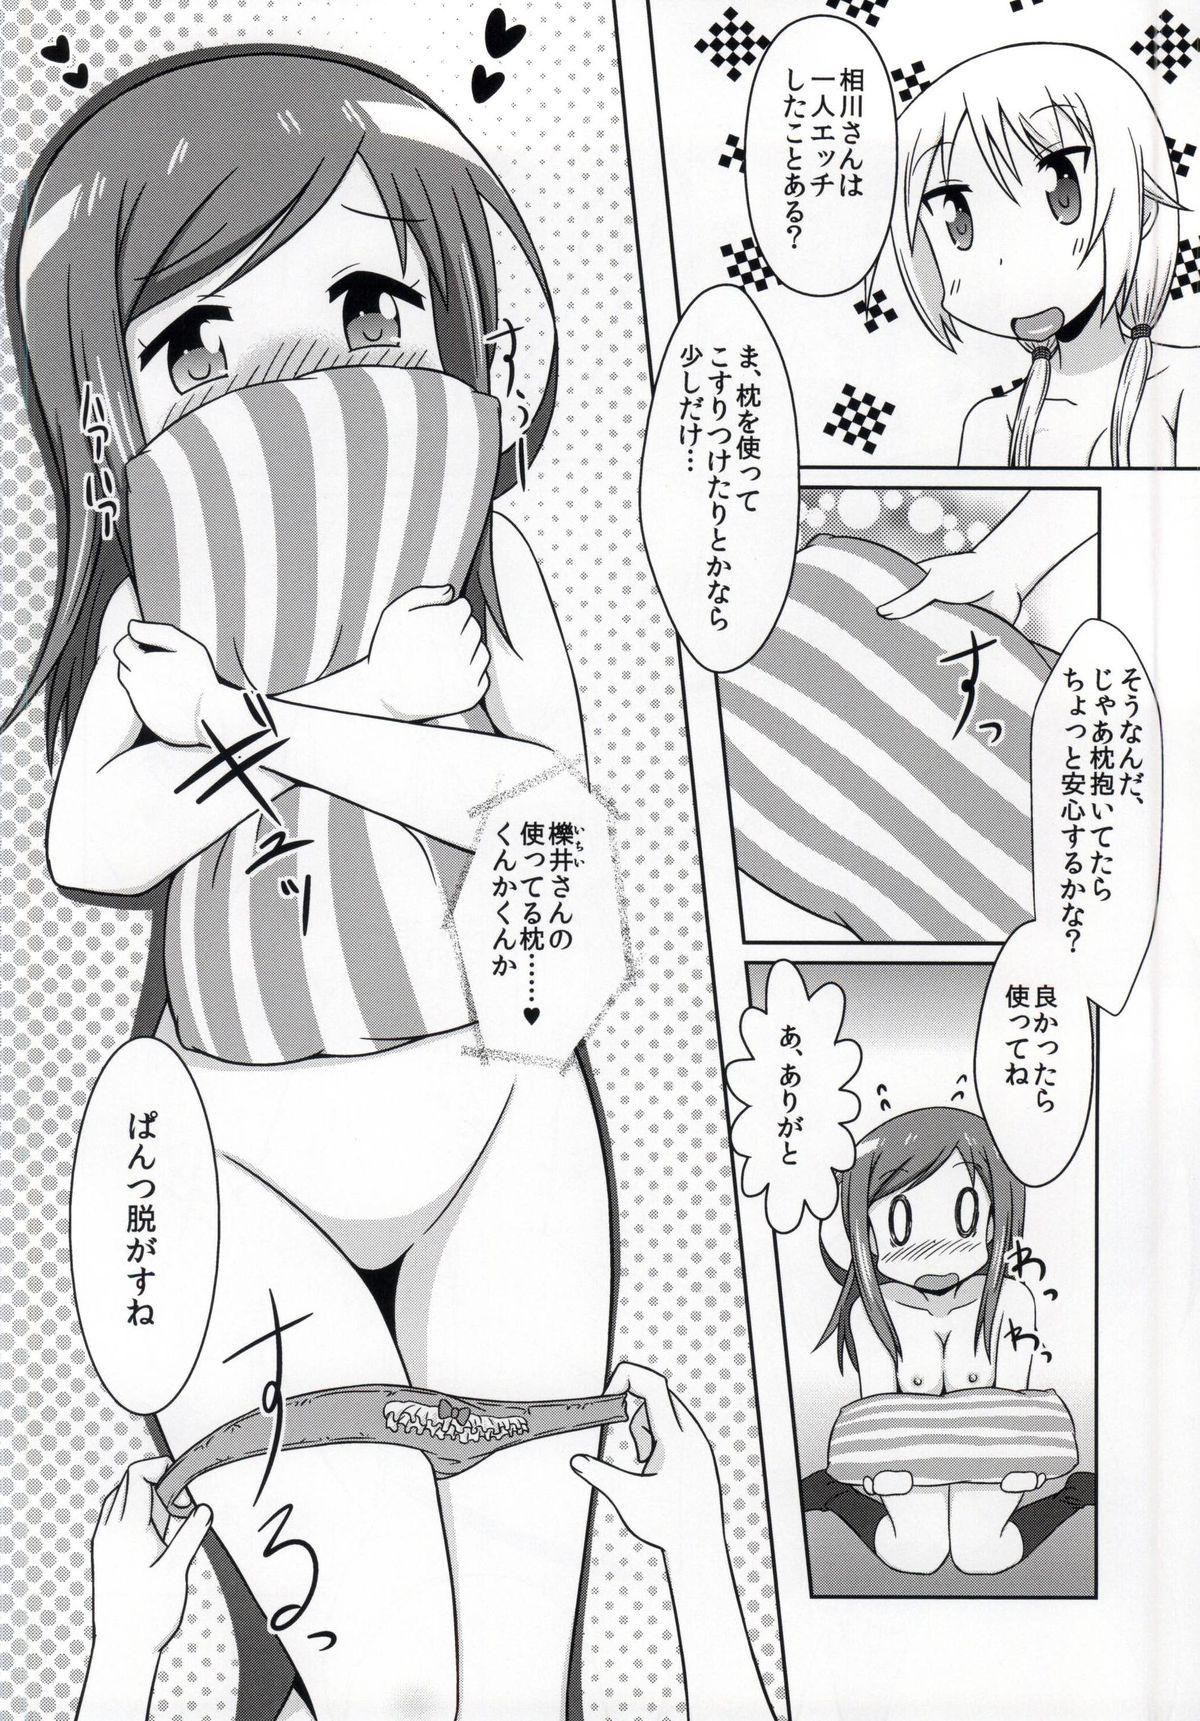 Bunduda Yuyushiki Koto wa Subarashiki kana 3 - Yuyushiki Rico - Page 11